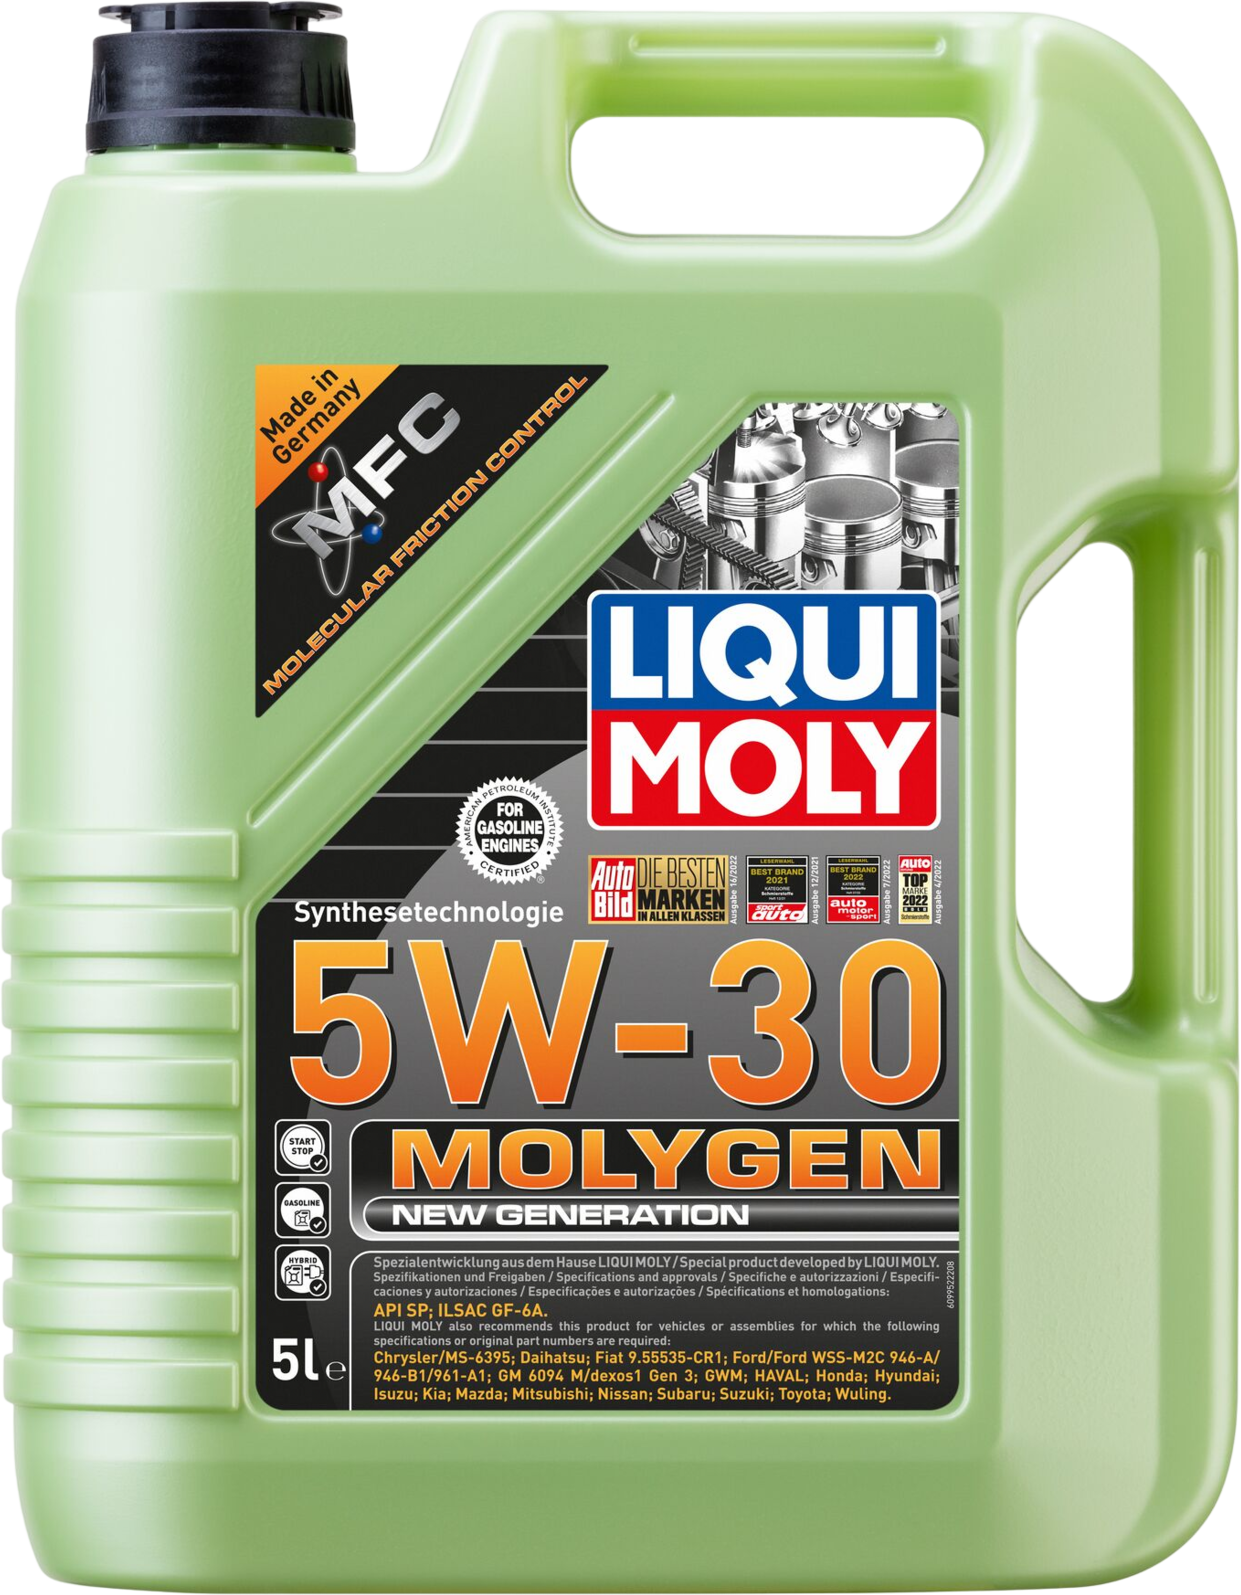 Liqui Moly Molygen New Generation 5W-30, 5 lt